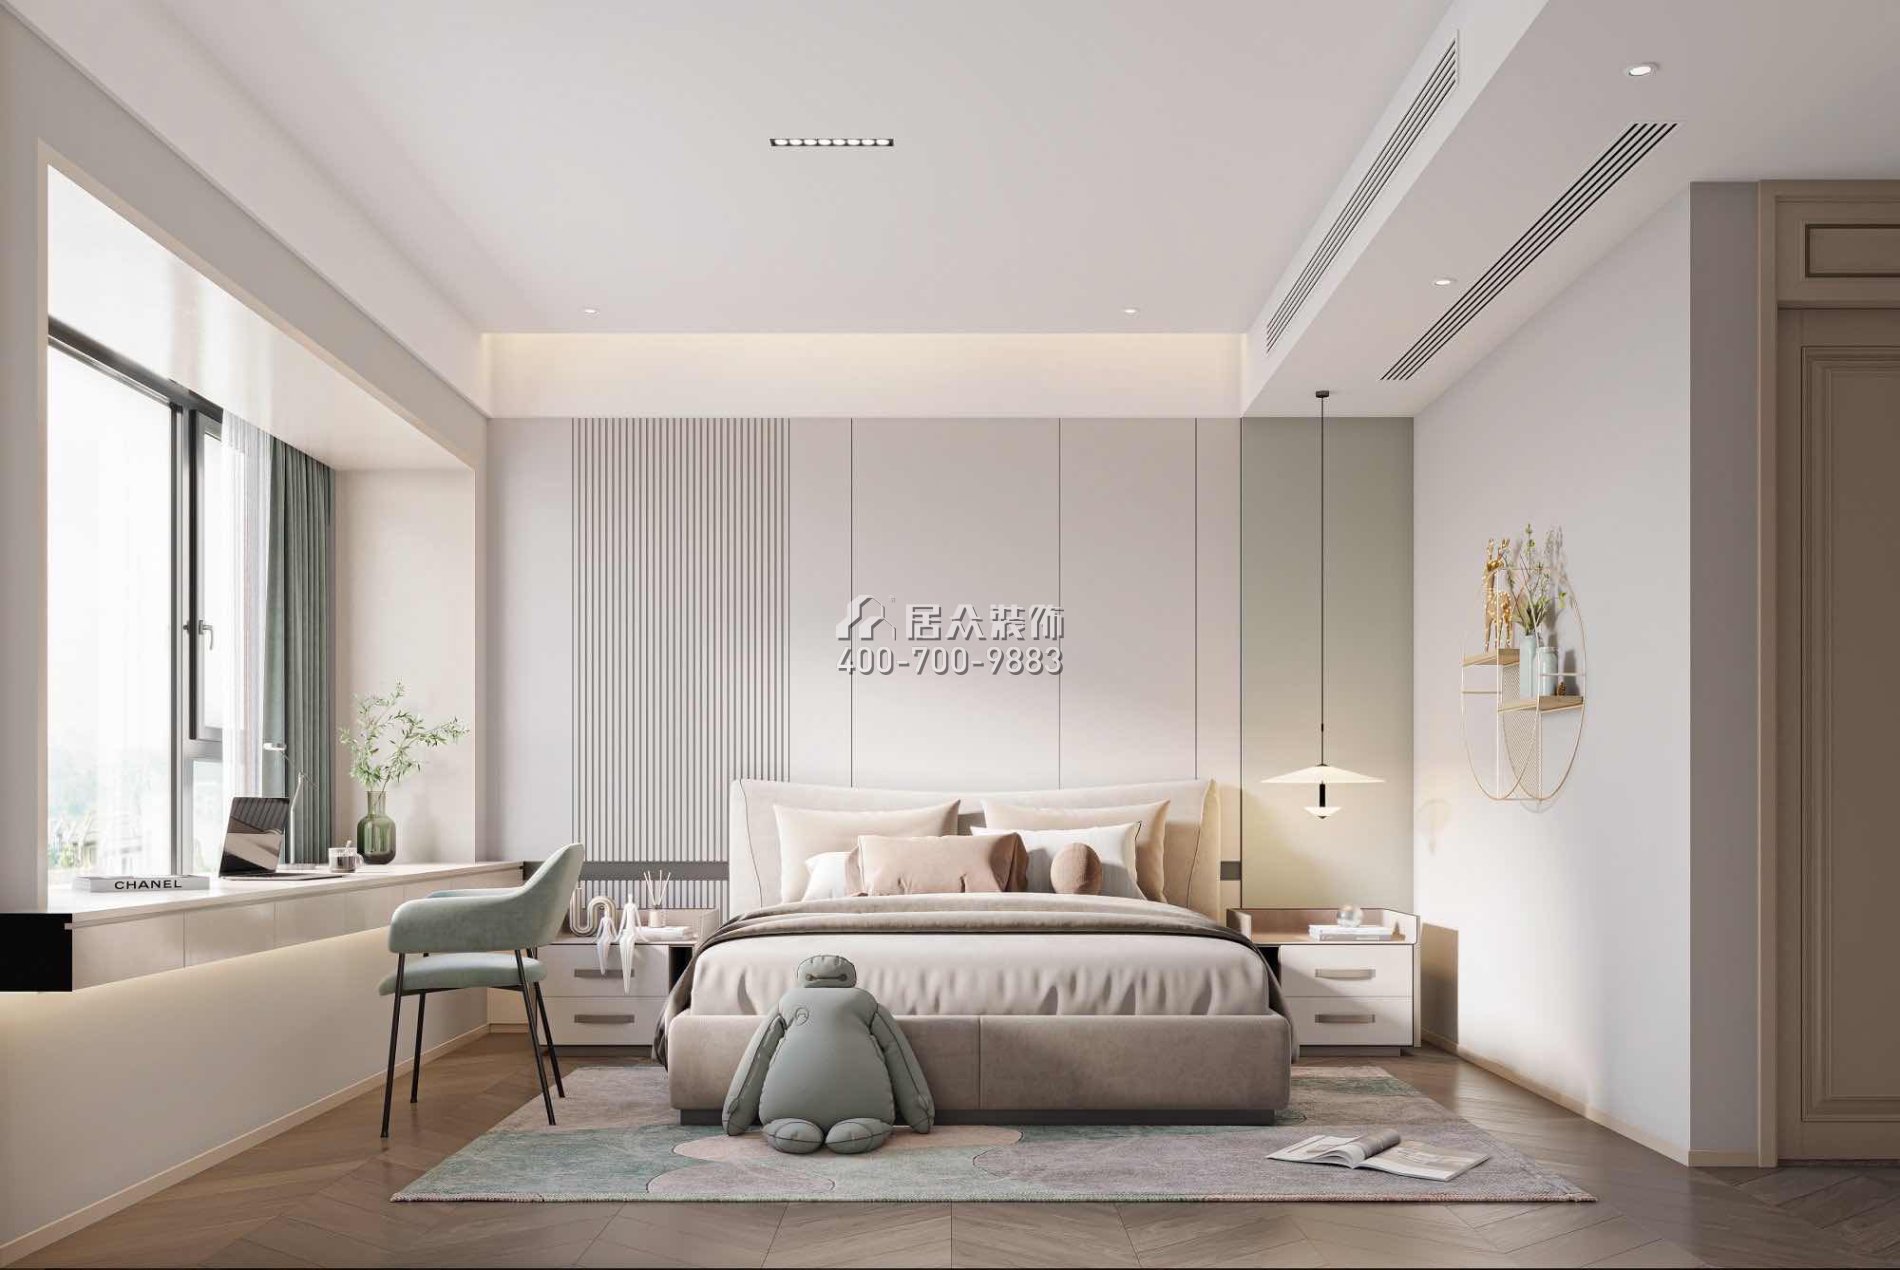 恒裕水墨蘭亭350平方米中式風格復式戶型臥室裝修效果圖